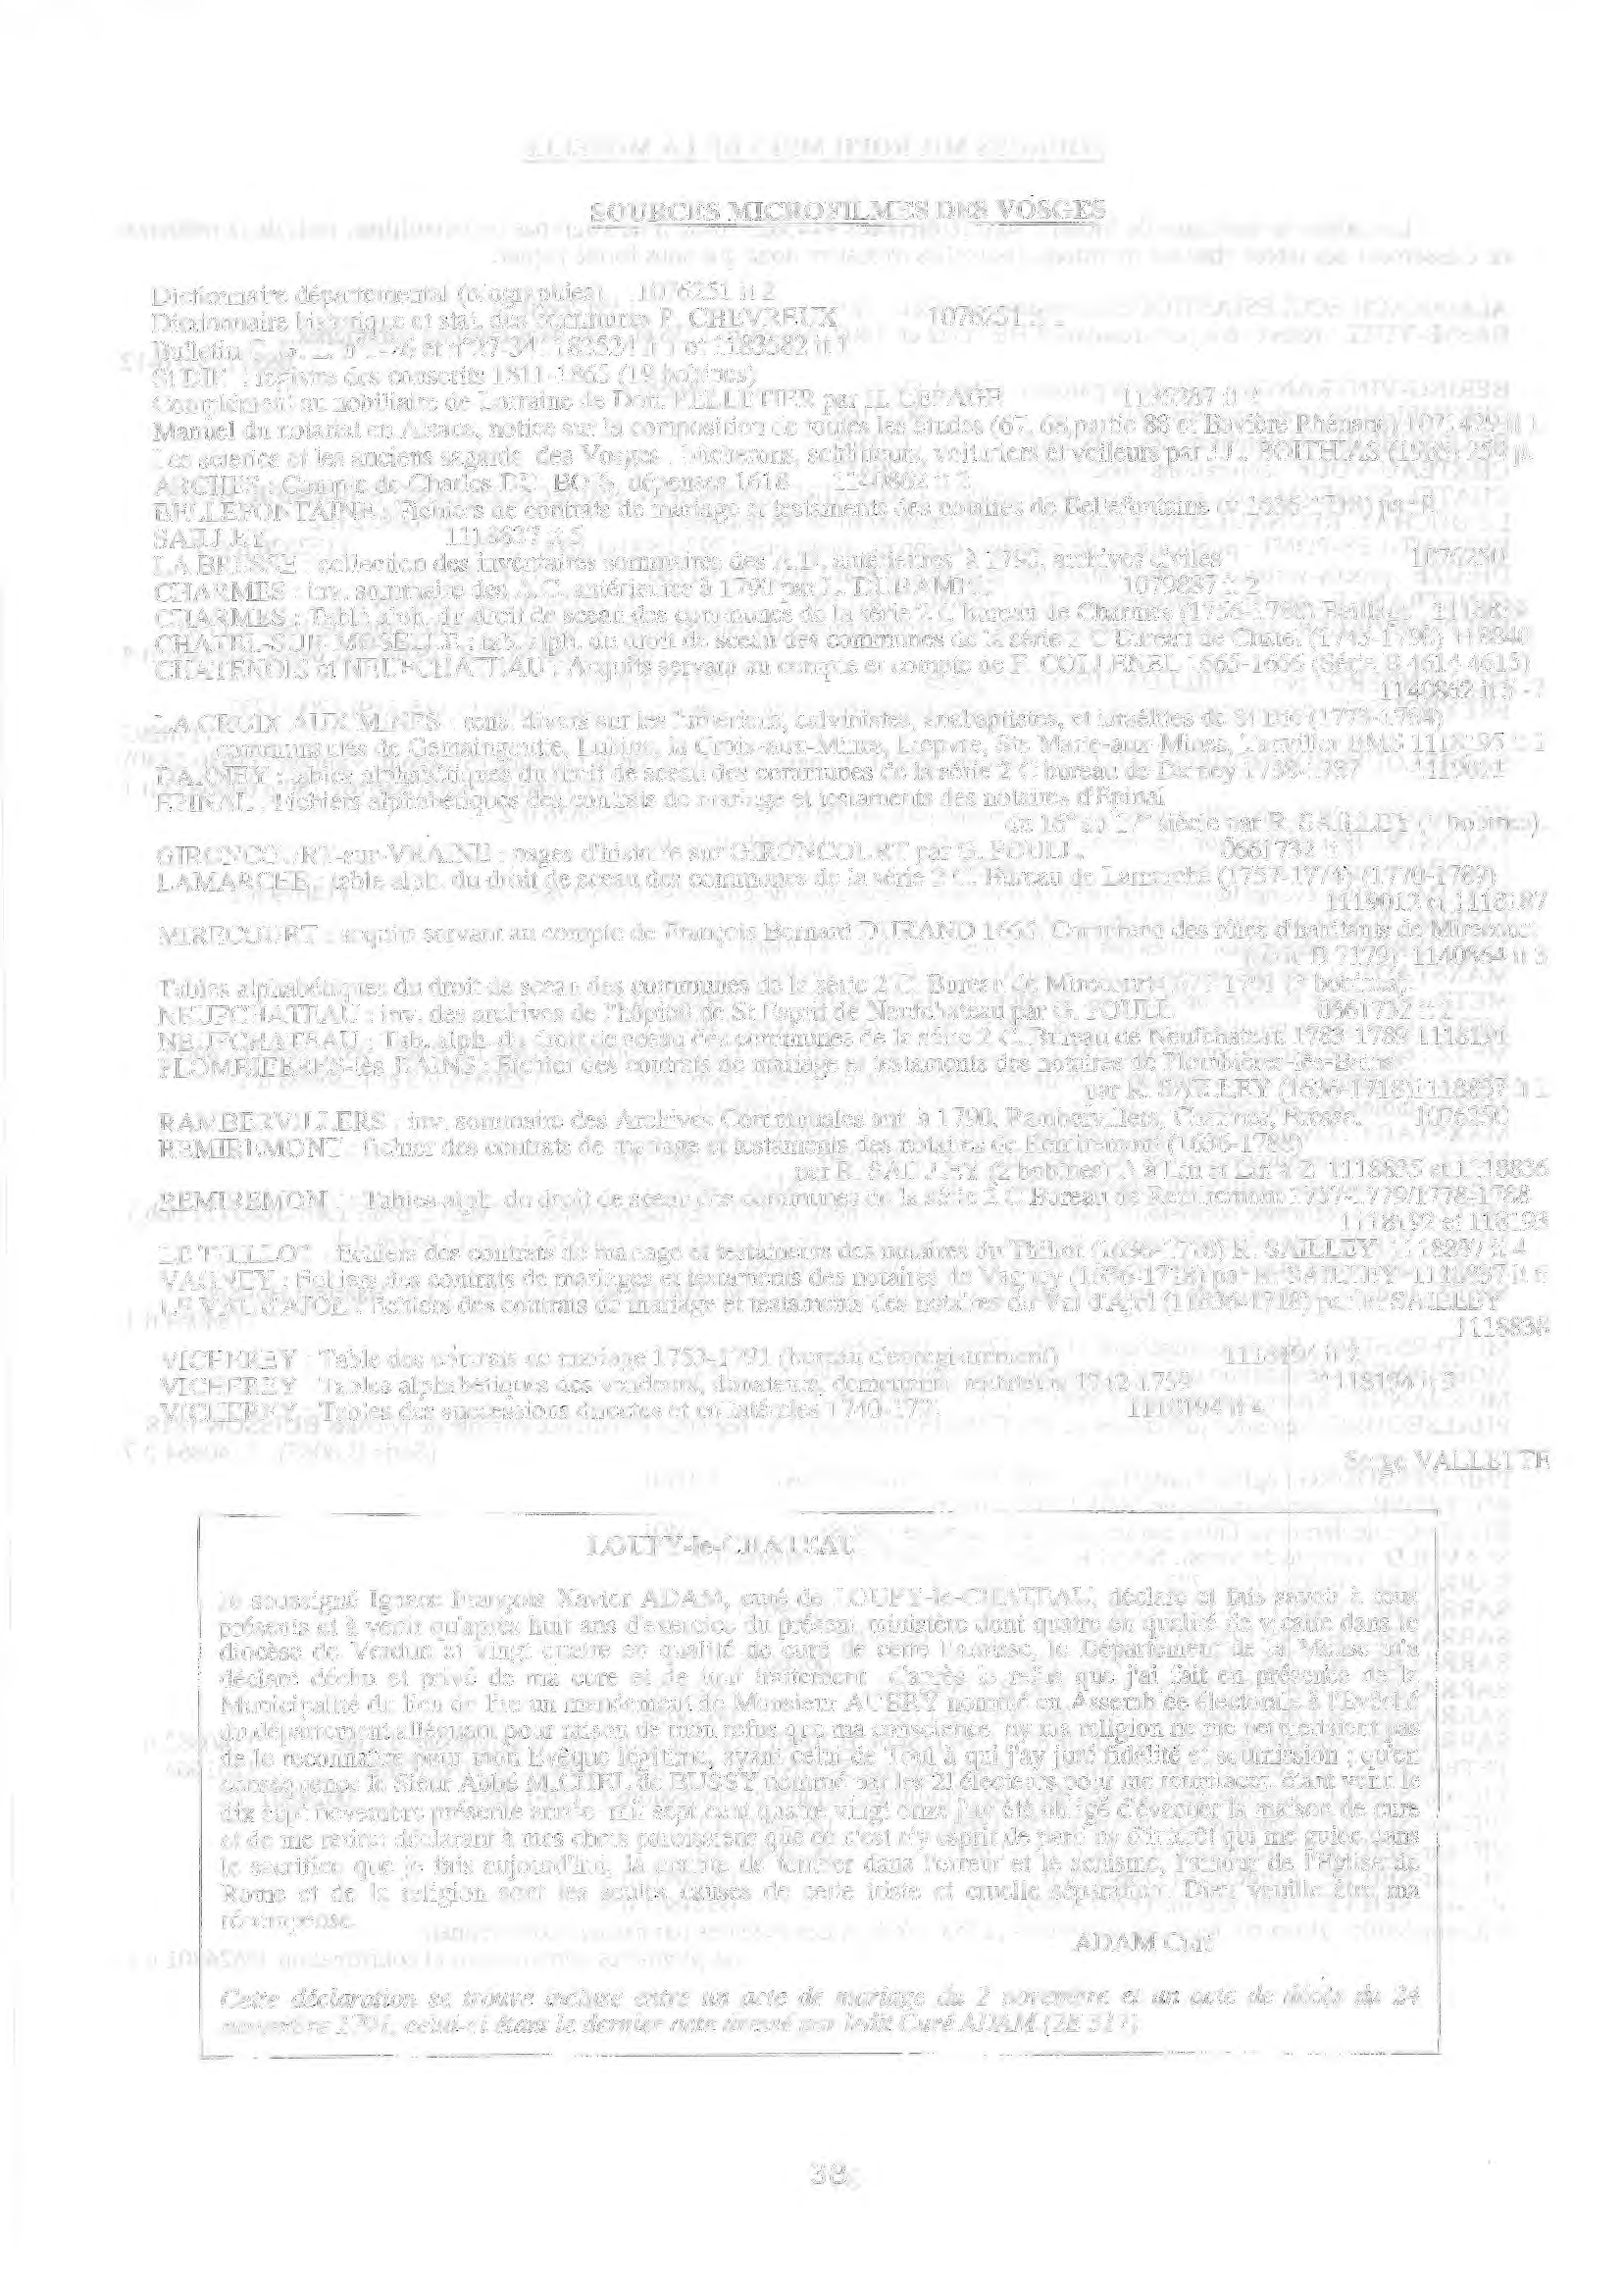 SOURCES MICROFILMES DES VOSGES Dictionnaire départemental (biographies) 7625 it 2 Dictionnaire historique et stat. des communes P. CHEVREUX 7625it Bulletin C. G. L.